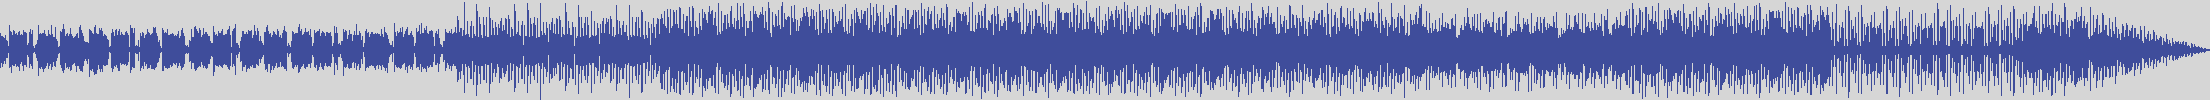 noclouds_chillout [NOC008] Avenue 8 - Estax [Original Mix] audio wave form